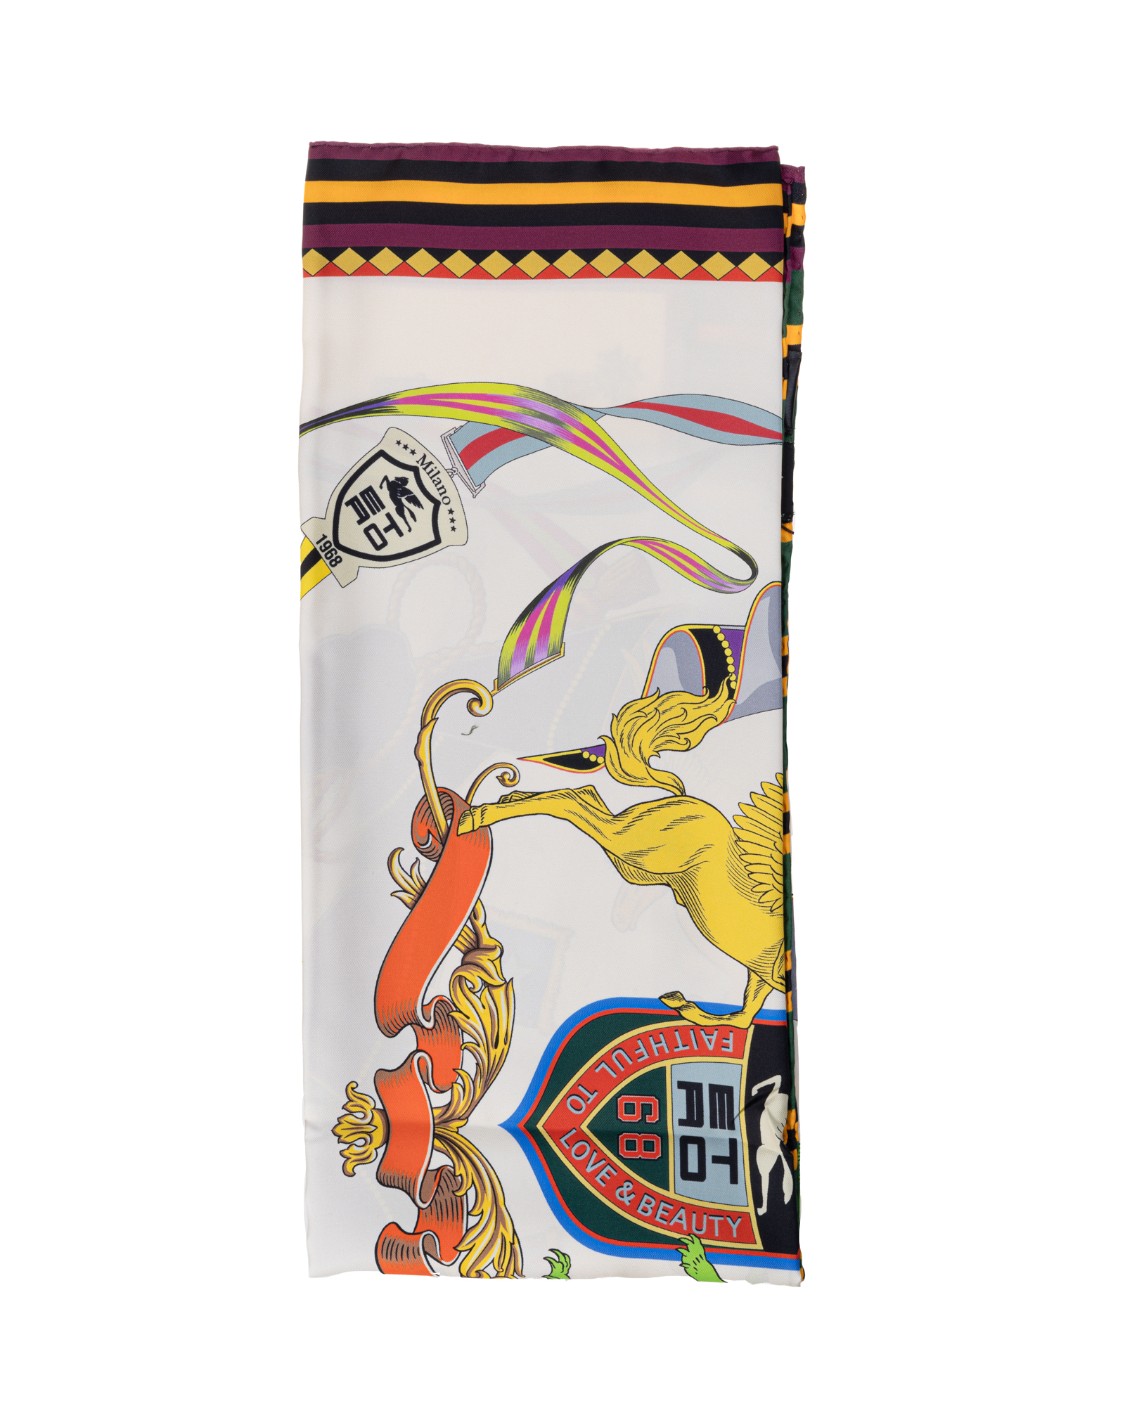 shop ETRO  Foulard: Etro foulard in seta con stampa Pegaso.
Dimensioni: 90 cm x 90 cm.
Composizone: 100% seta.
Made in Italy.. 10050 4518-0990 number 3448170